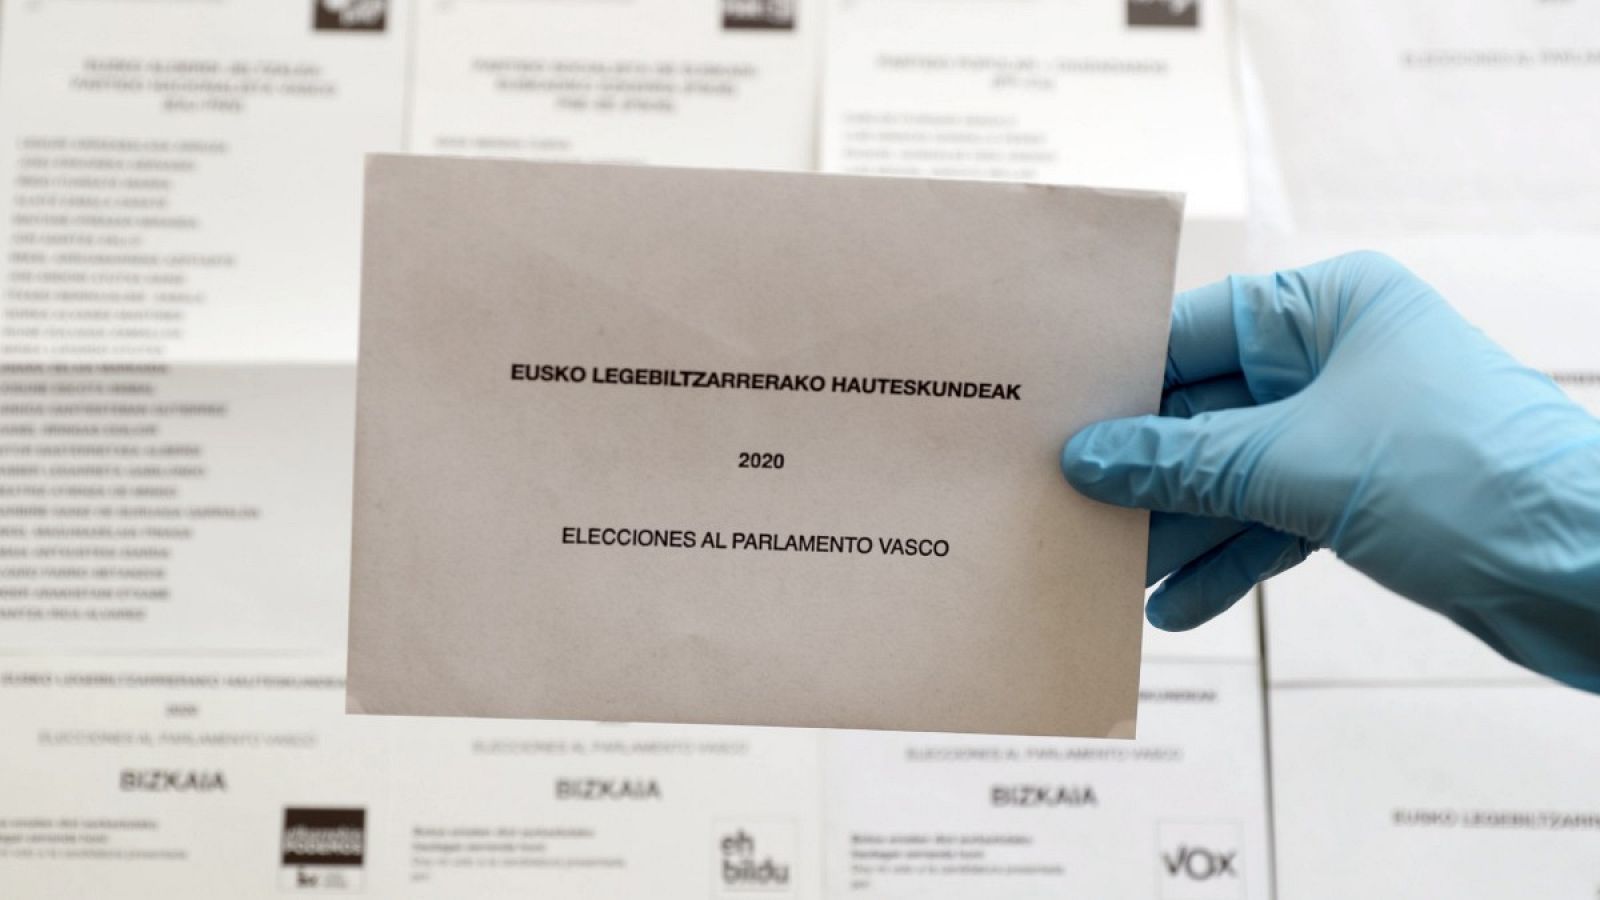 Coronavirus | El Gobierno vasco advierte que quien vaya a votar con coronavirus cometerá un delito contra la salud pública